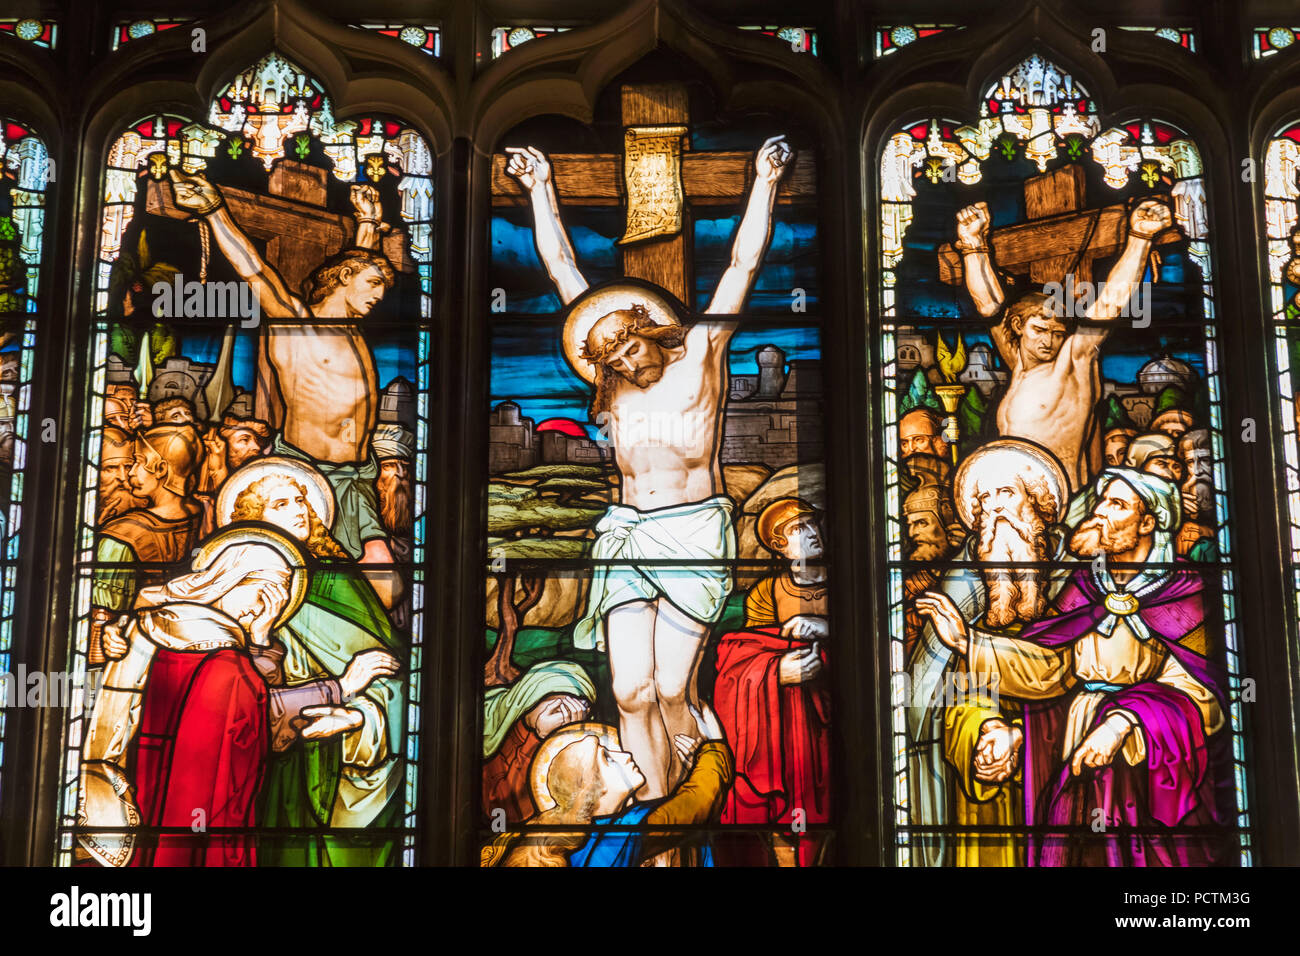 Grande Bretagne, Ecosse, Edimbourg, le Royal Mile, St Giles' Cathedral, vitrail qui présente la vie du Christ Banque D'Images